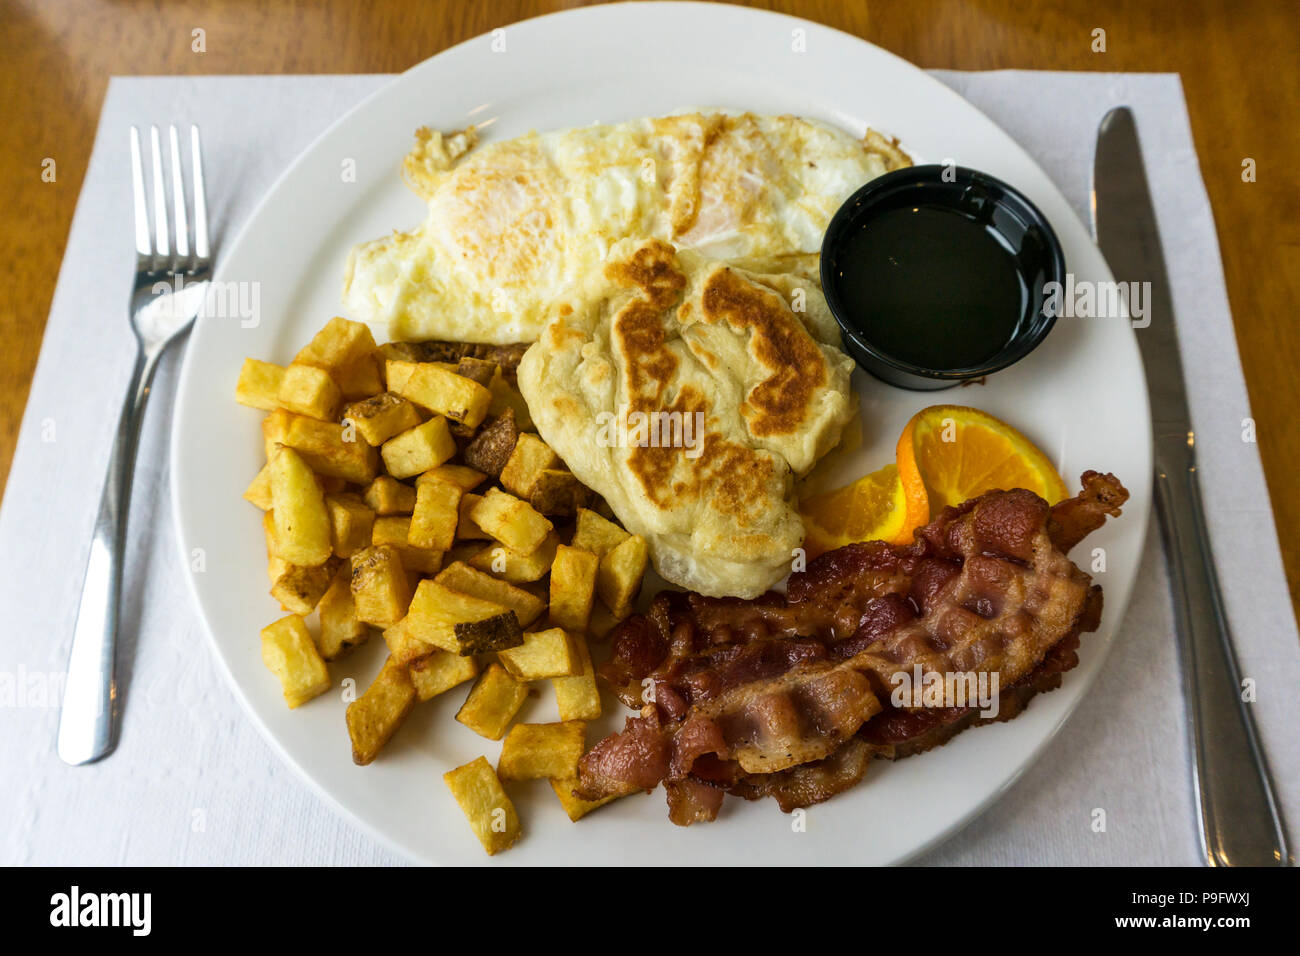 Ein Neufundland Frühstück mit Eiern, Speck, Hash Brown Kartoffeln und toutons mit Melasse. Stockfoto